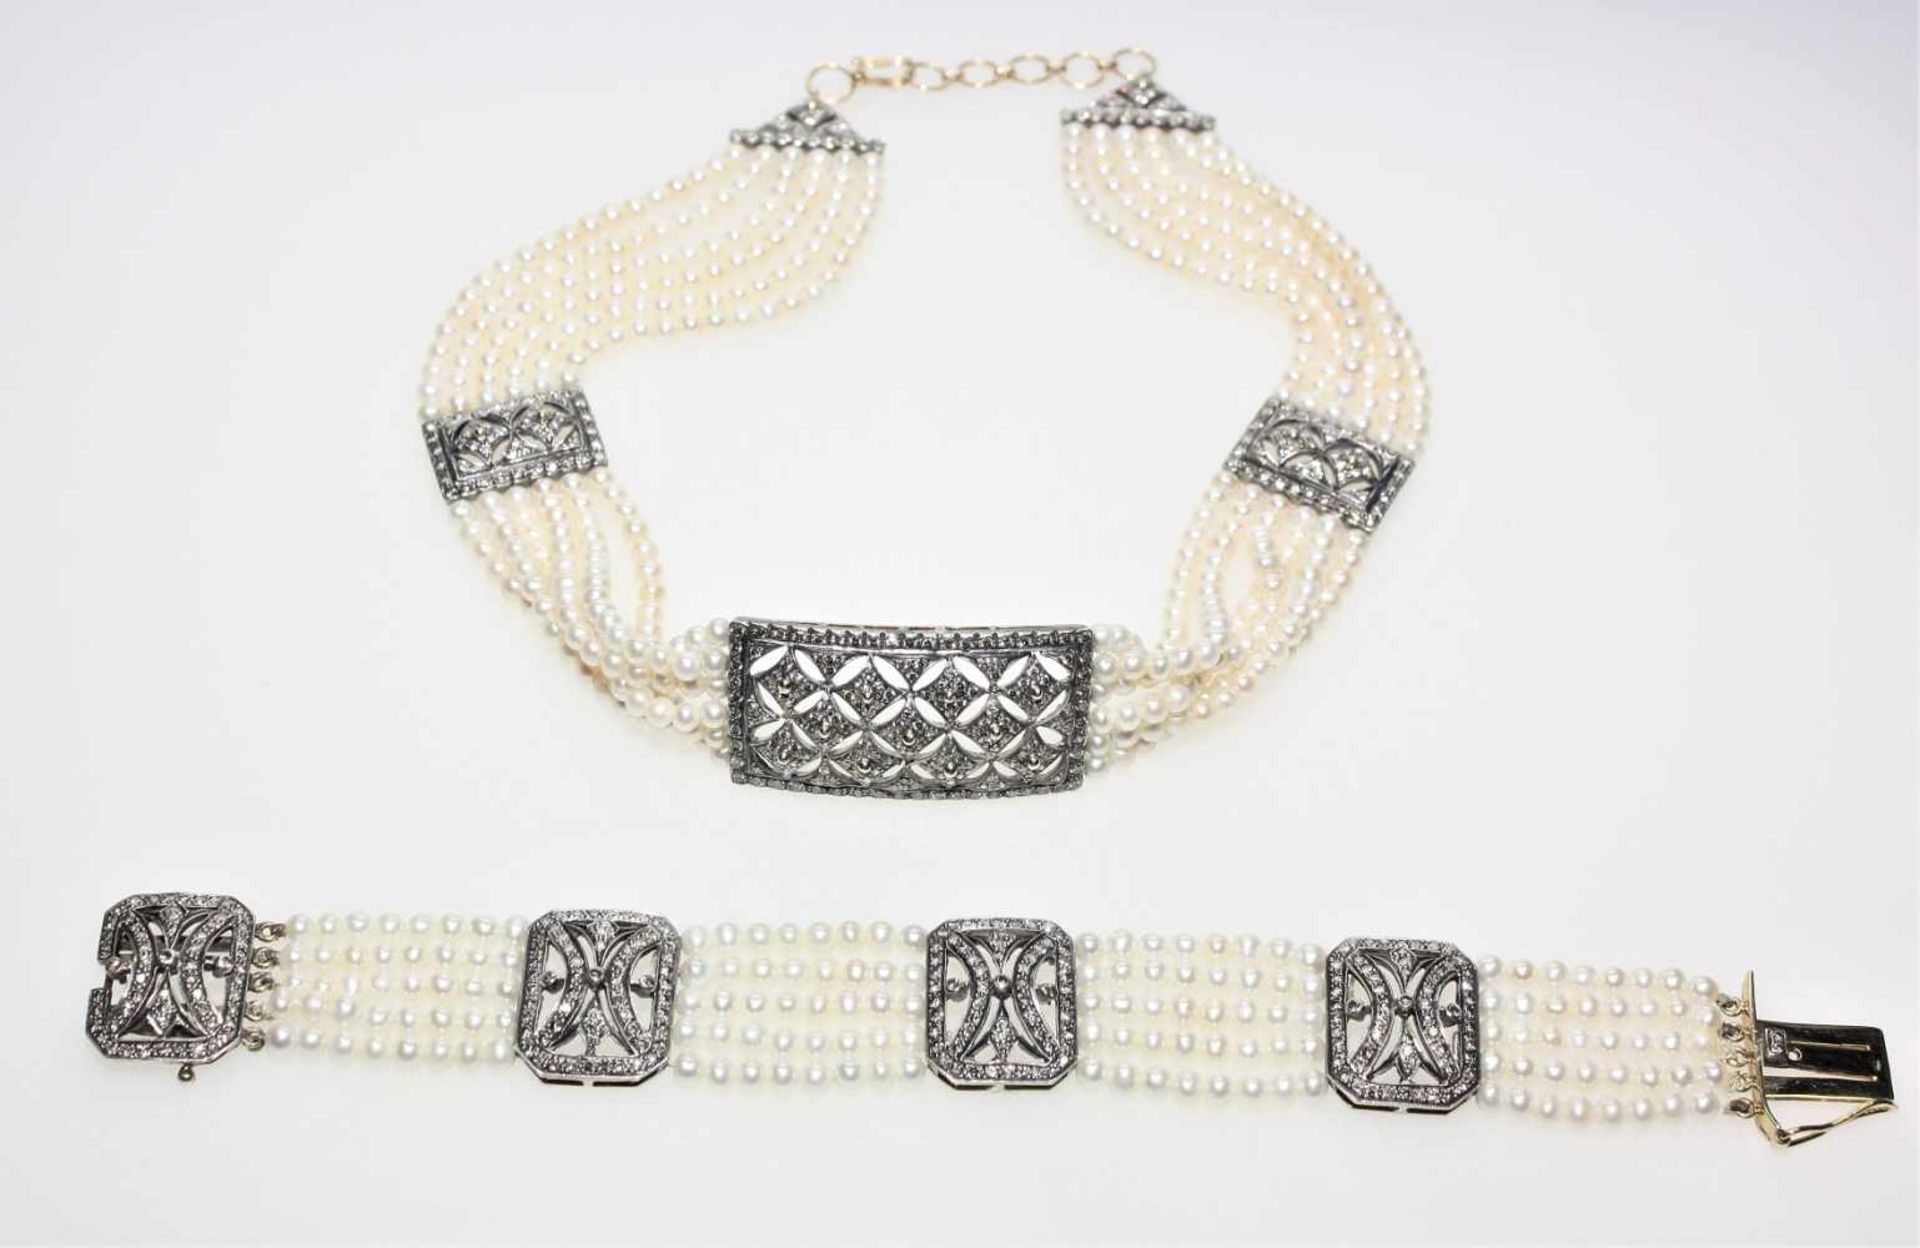 Perlengarnitur:6 reihiges Halsband, Choker, mit drei diamantbesetzten Zwischenteilen und Schließe